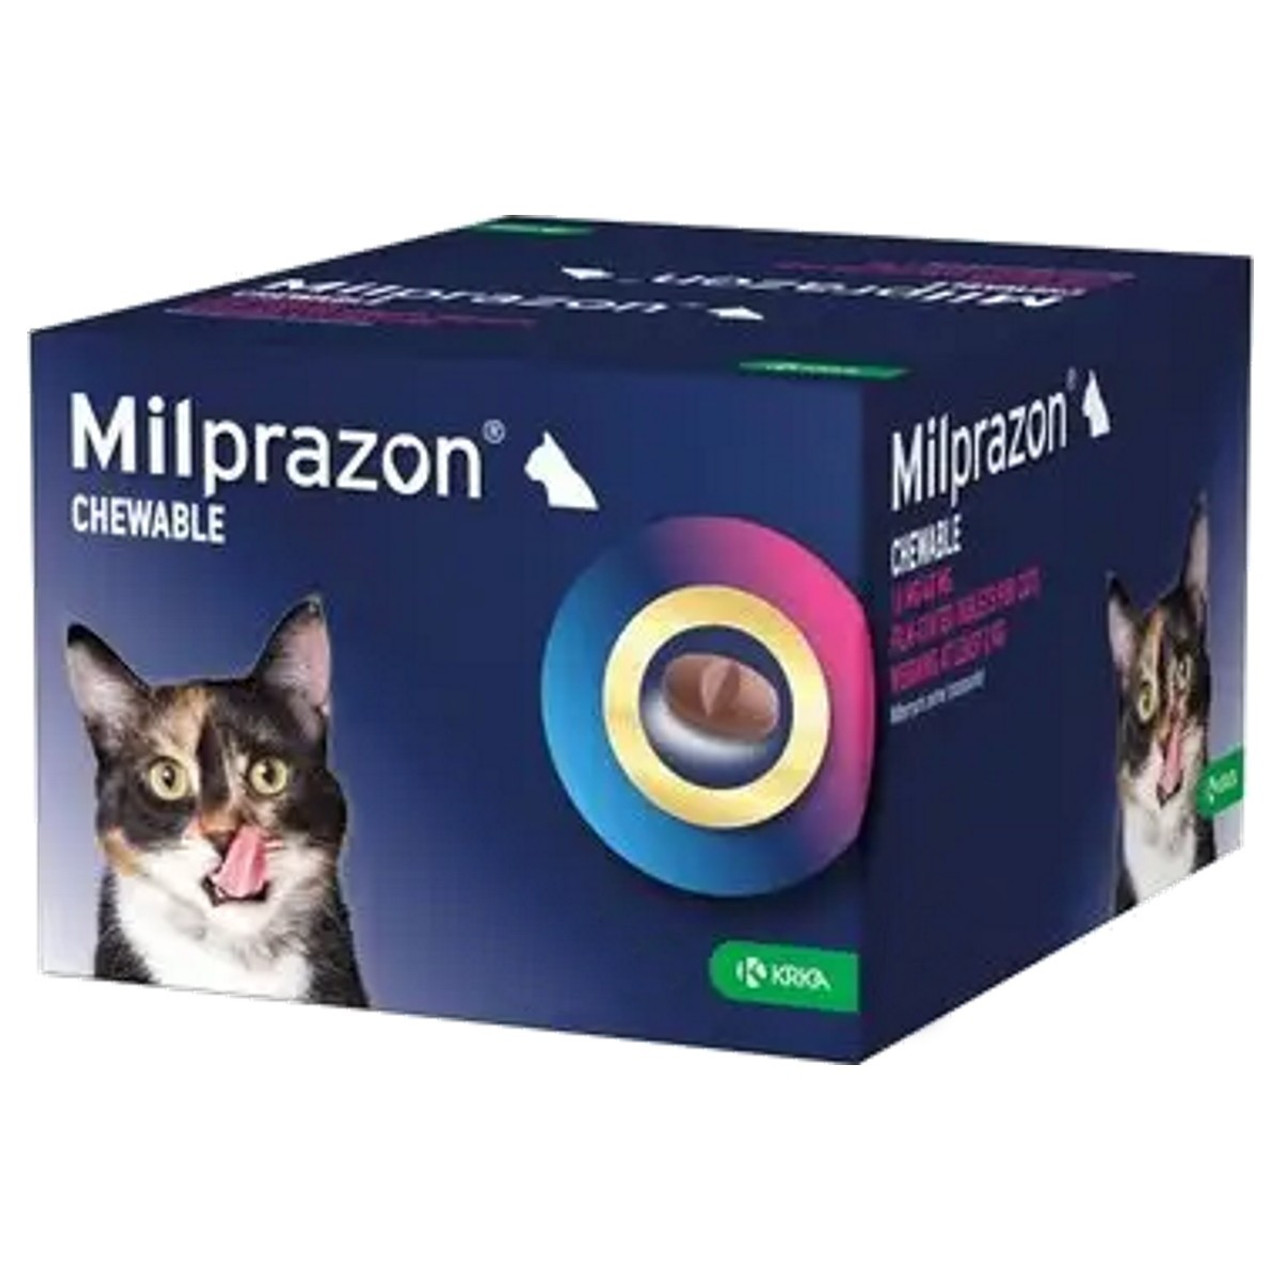 고양이 4kg-8kg(8.8-17.6파운드)를 위한 밀프라존 츄어블 16/40mg - 48정 20% 할인